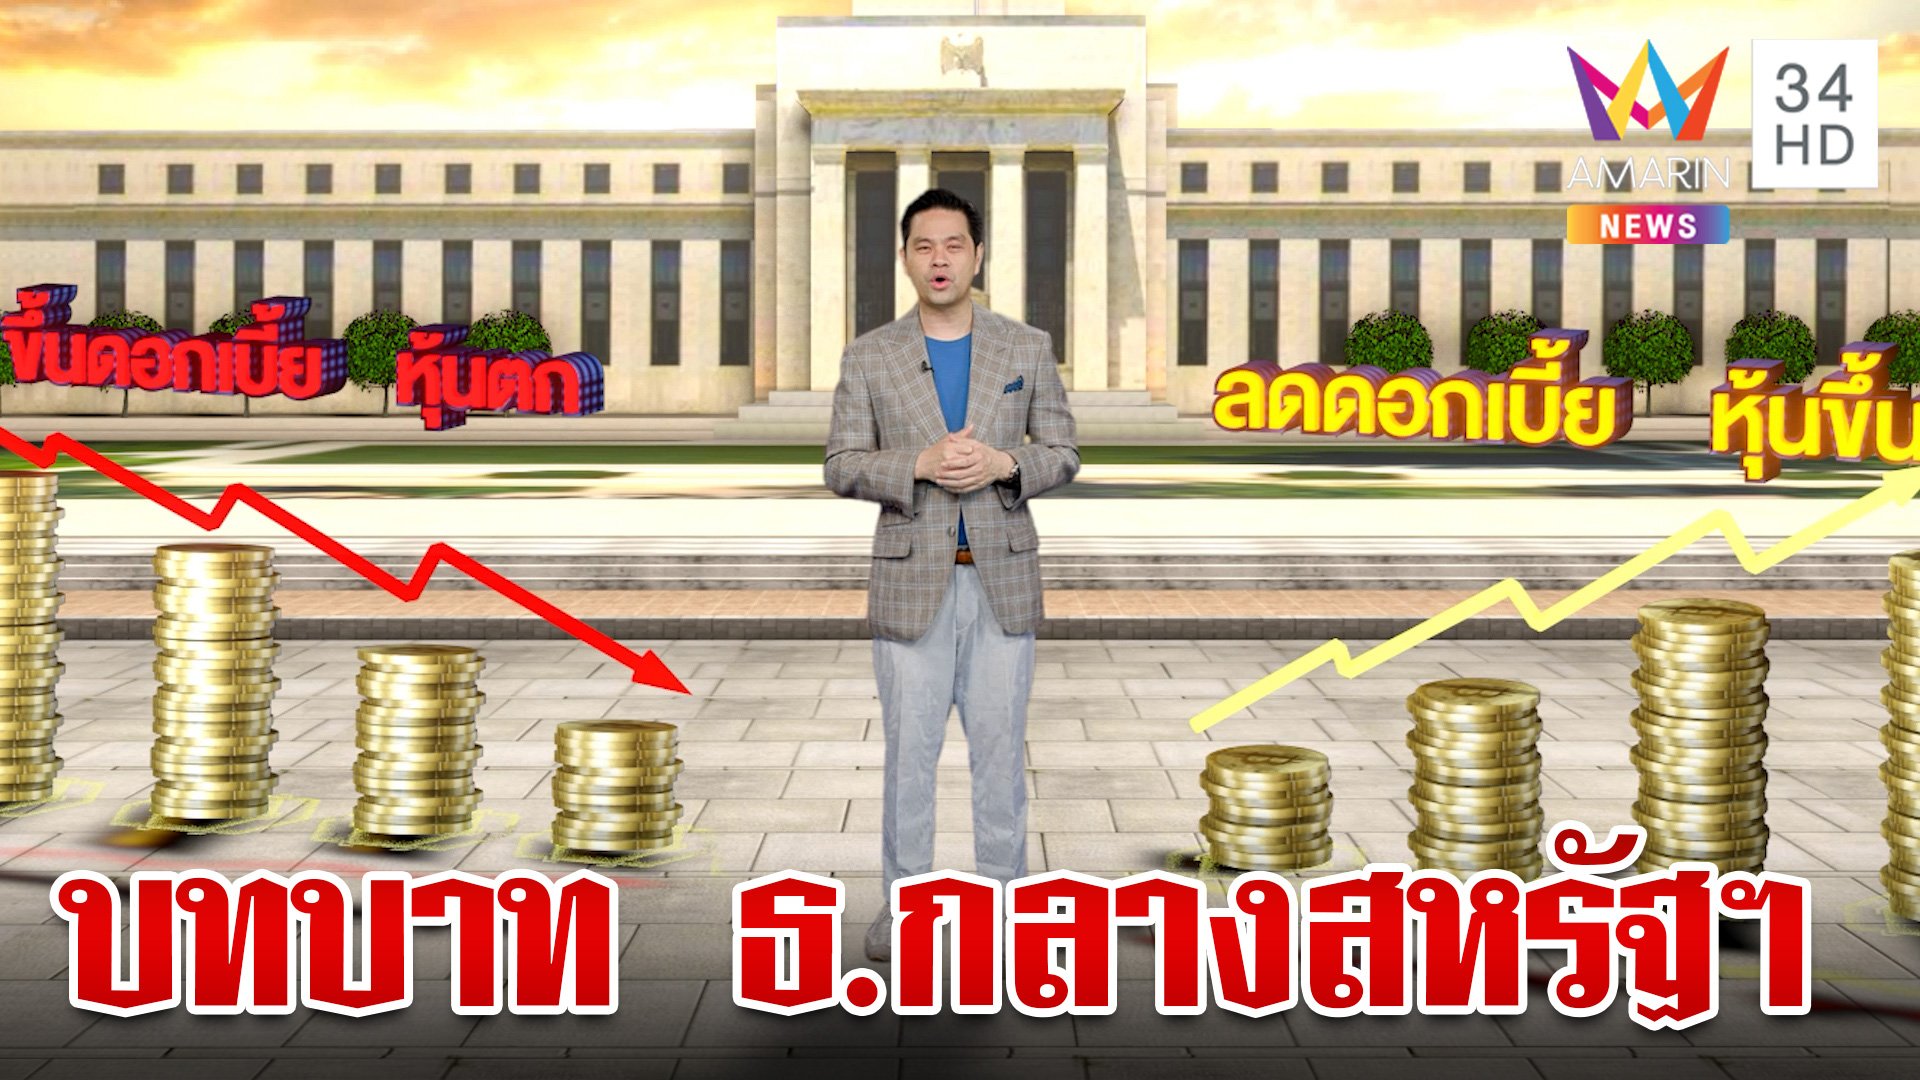 ธนาคารกลางสหรัฐฯ คืออะไร เกี่ยวข้องอย่างไรกับประเทศไทย  | ทุบโต๊ะข่าว | 31 ส.ค. 66 | AMARIN TVHD34